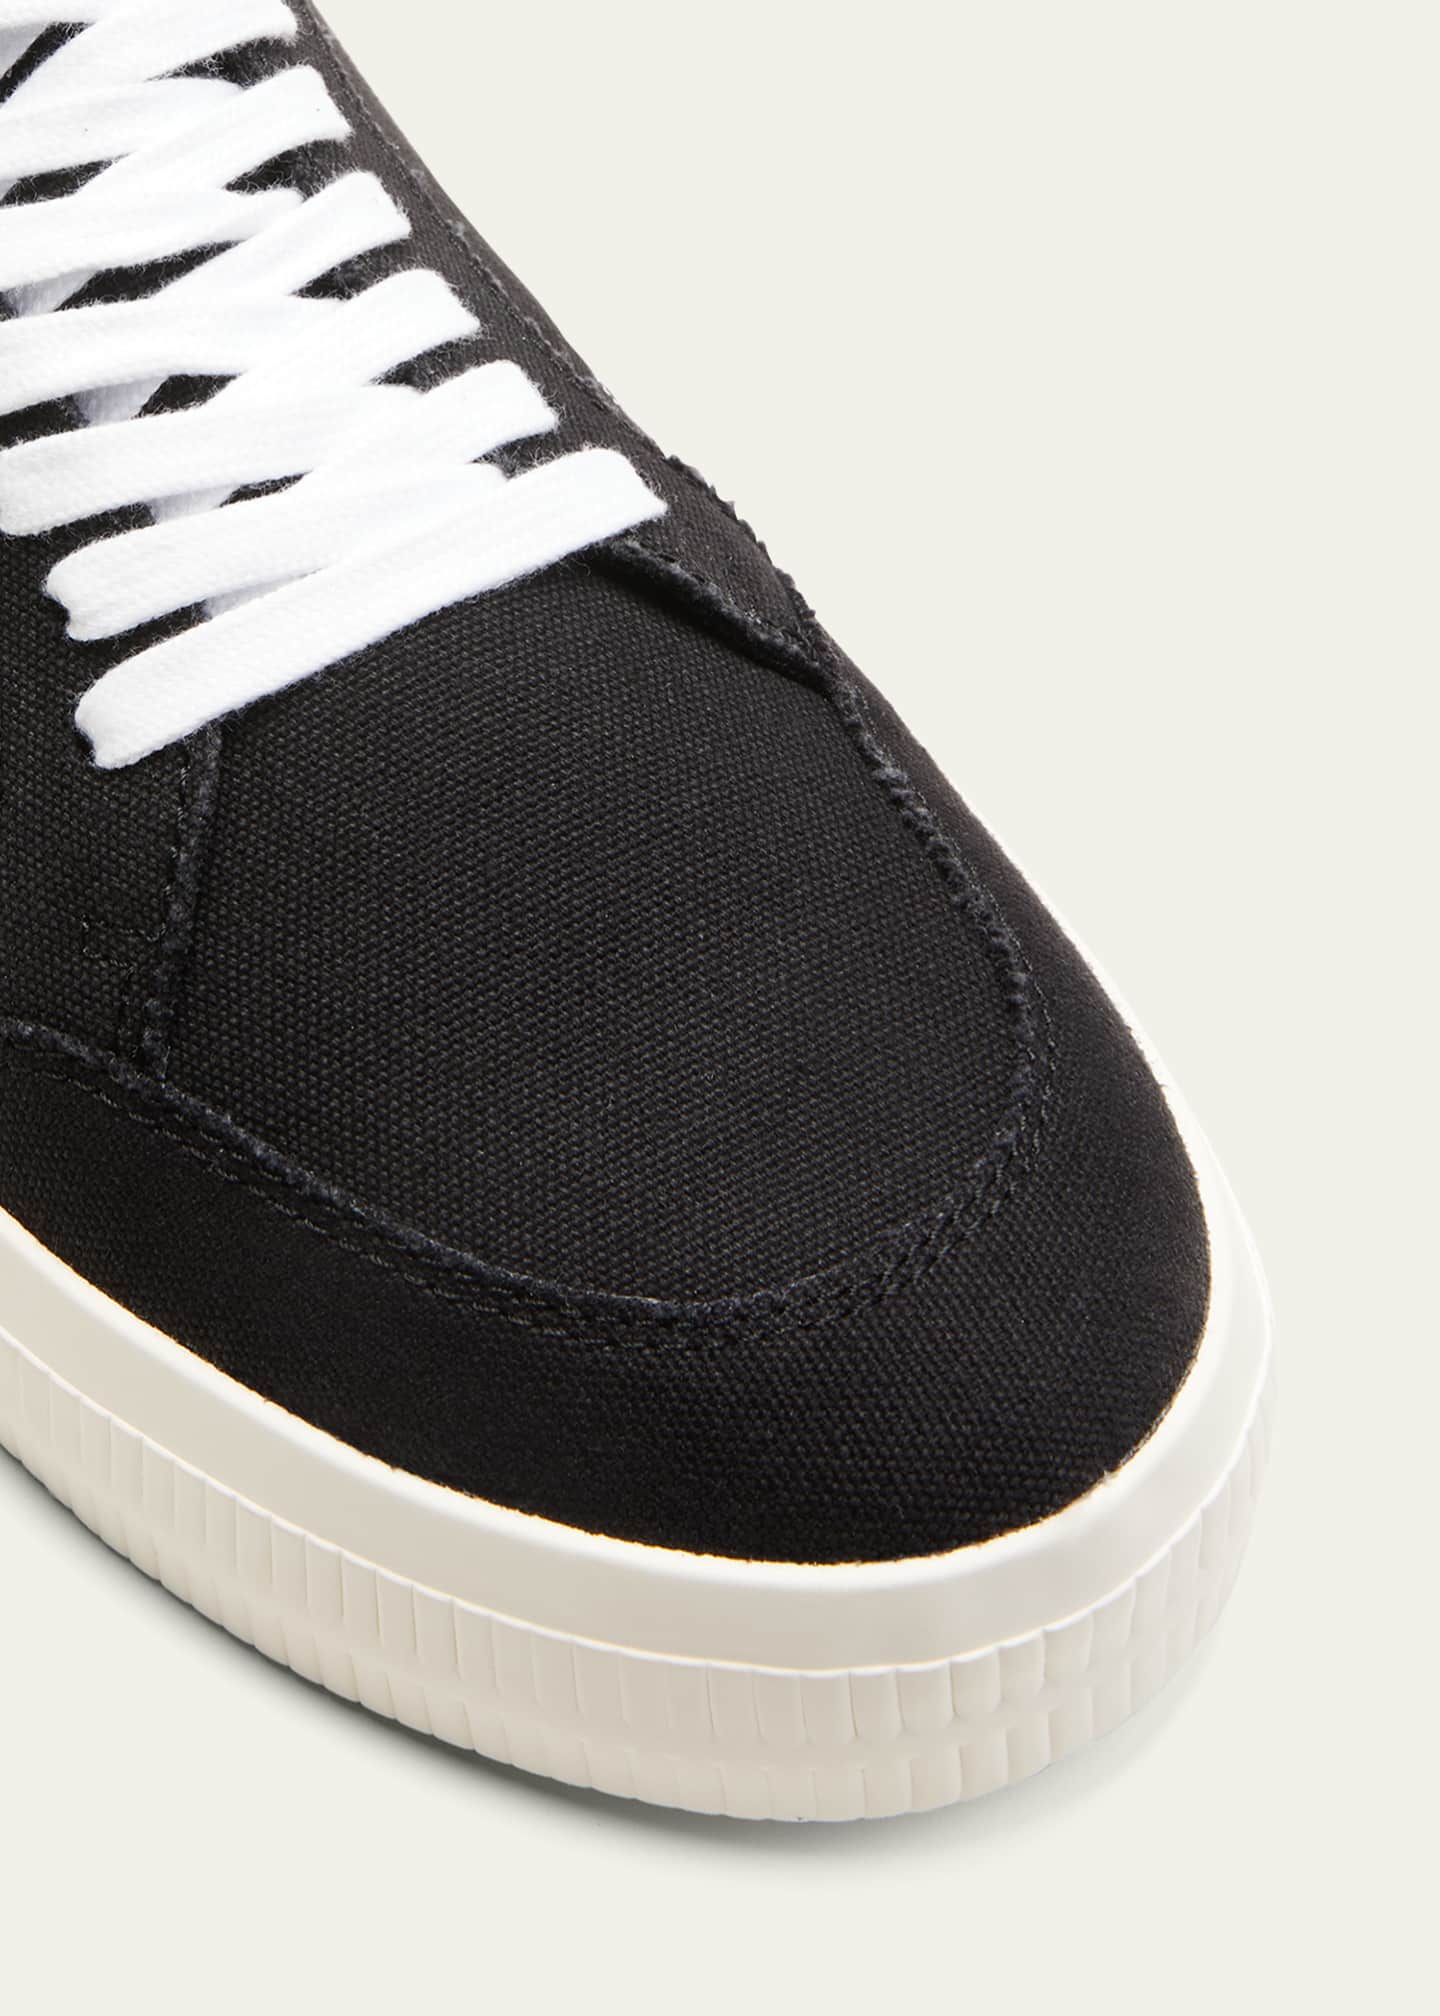 Off-White Men's Low Vulcanized Sneaker